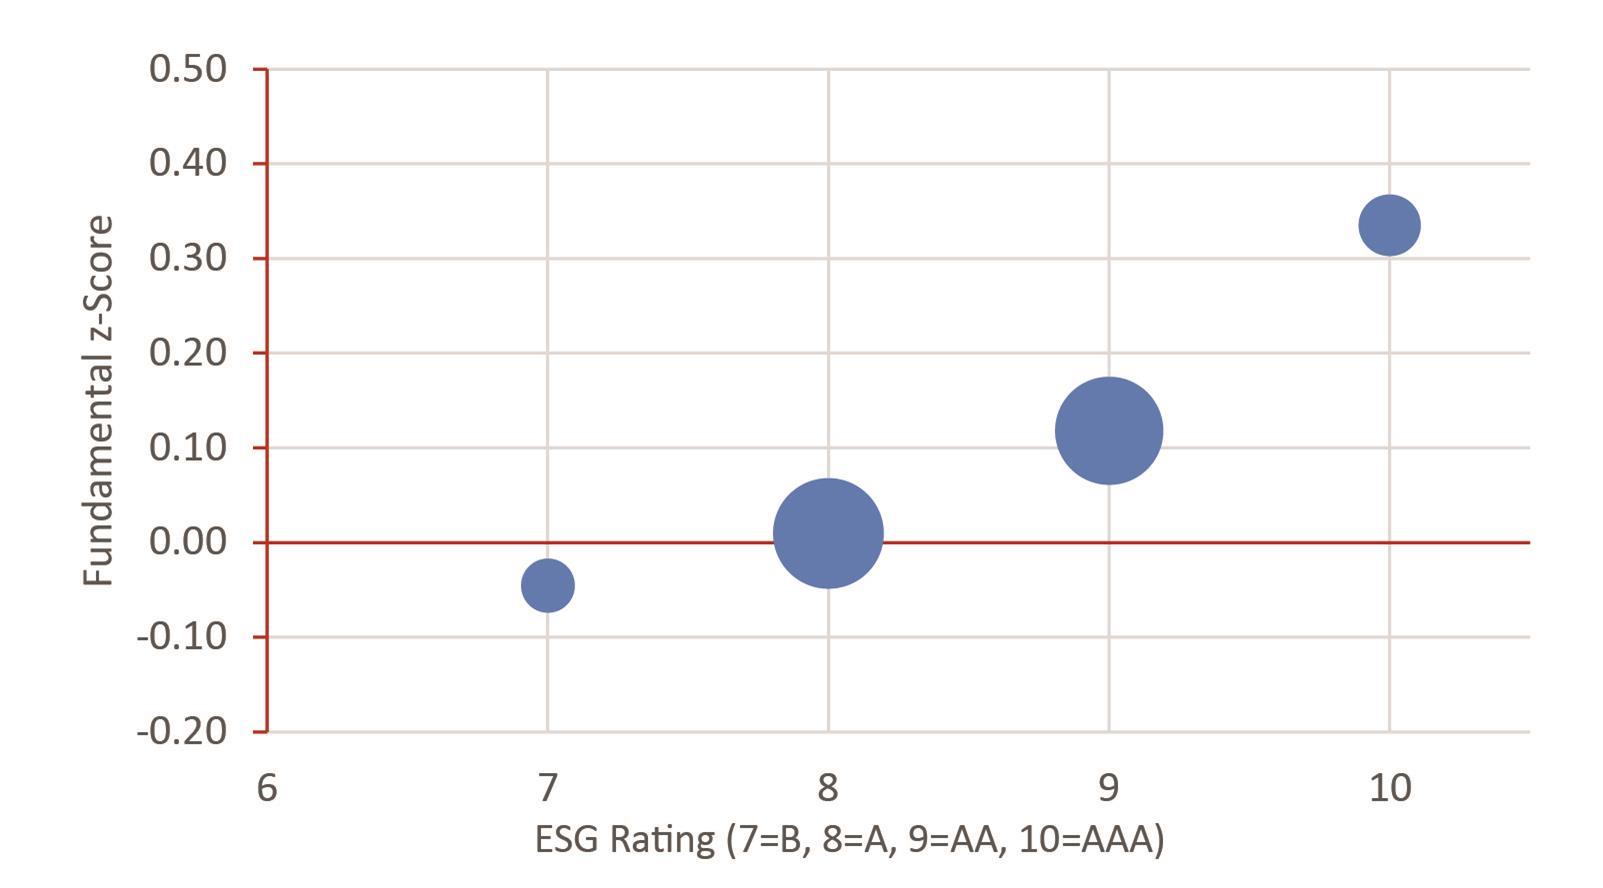 Chart 5: ClearBridge ESG ratings vs standardised balance sheet strength scores